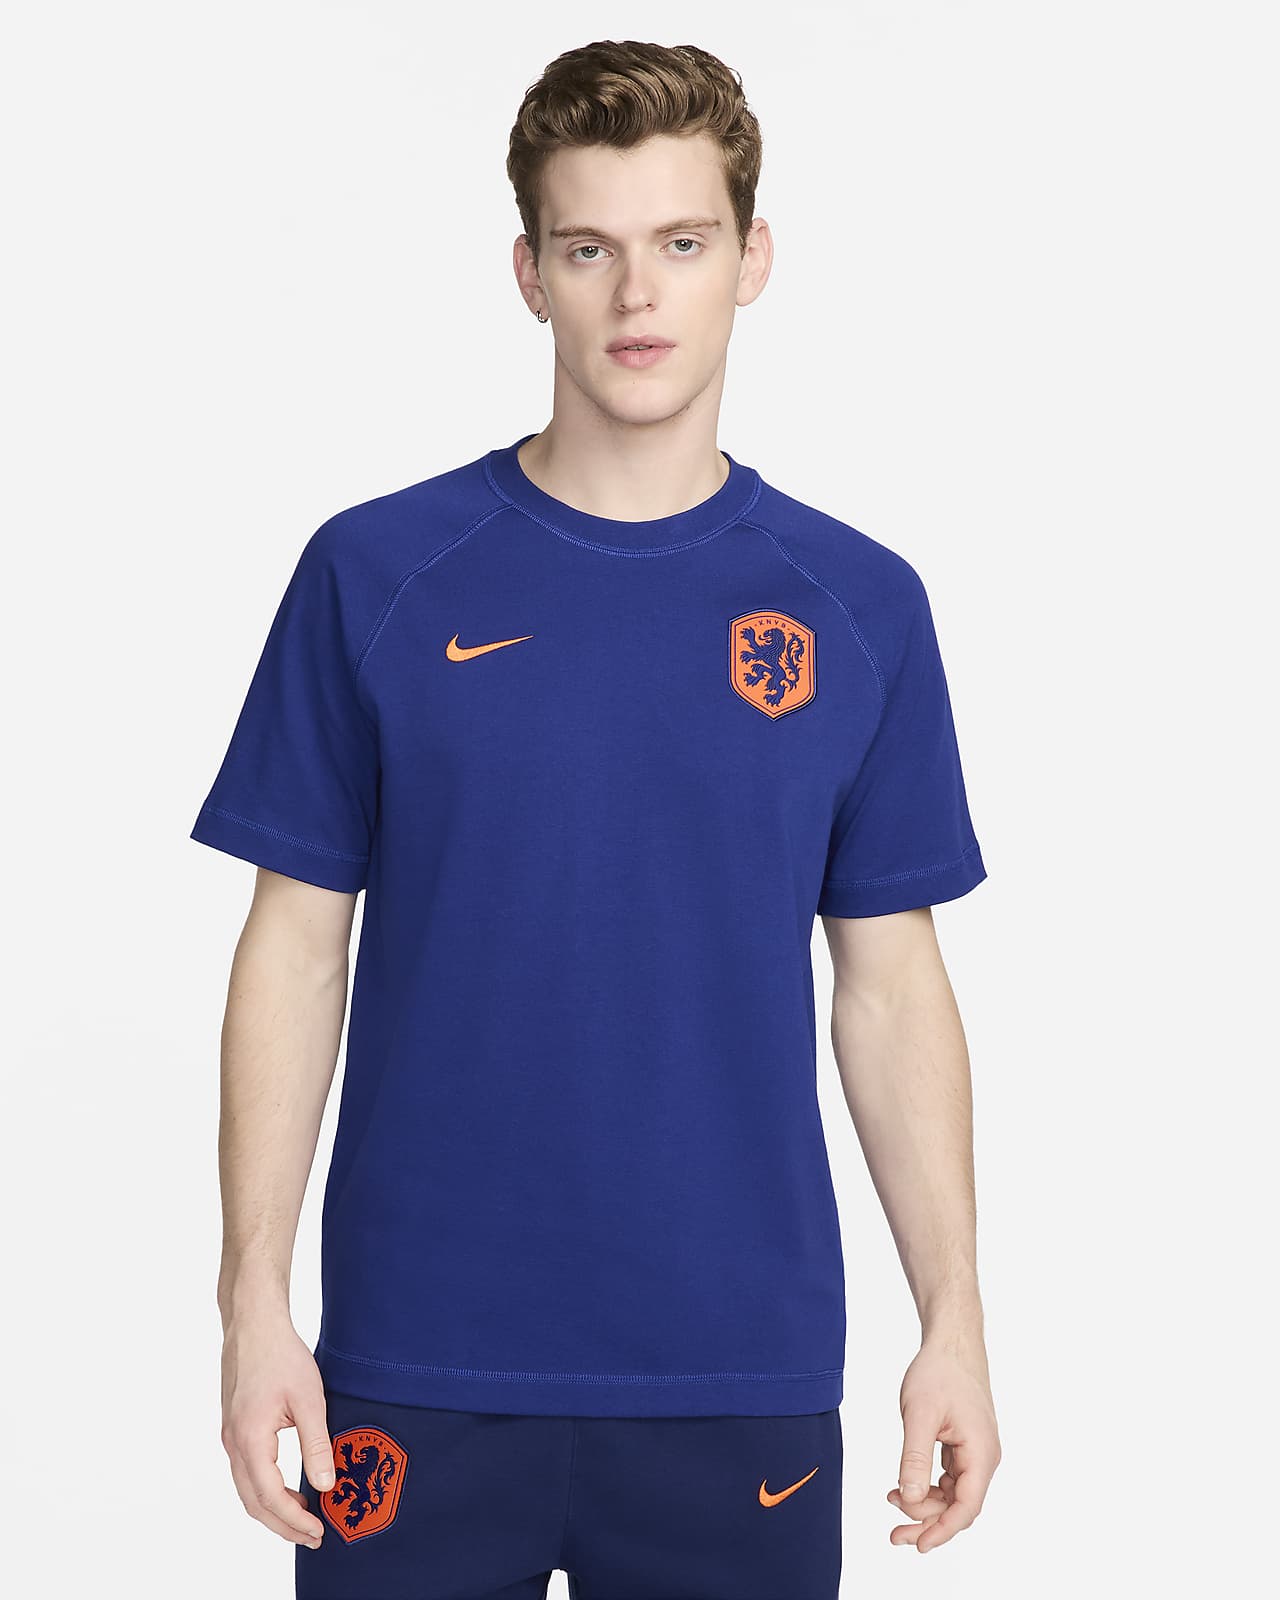 Ποδοσφαιρική κοντομάνικη μπλούζα Nike Κάτω Χώρες Travel